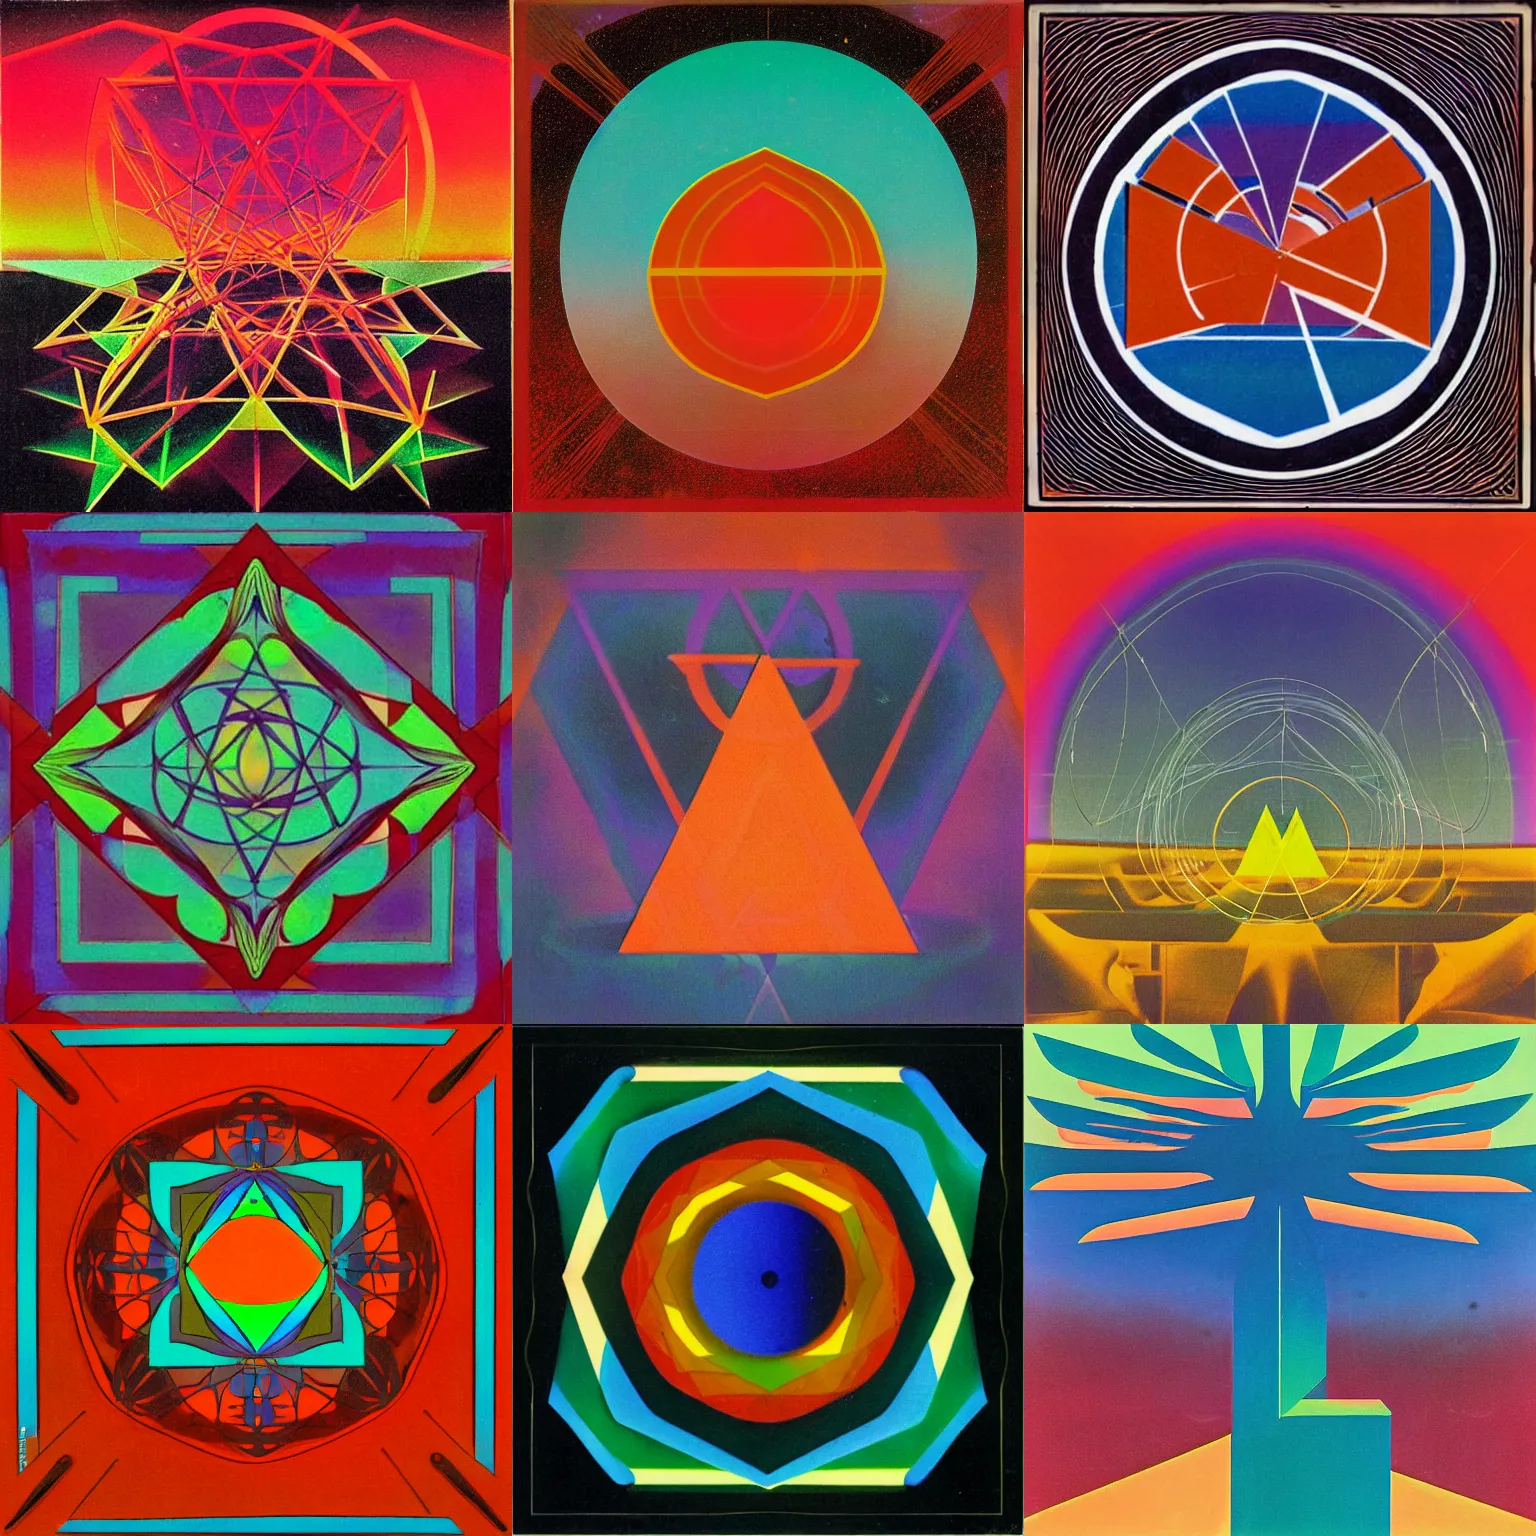 Prompt: Tangerine Dream Album Cover, geometric druid, strange glow, 1970s